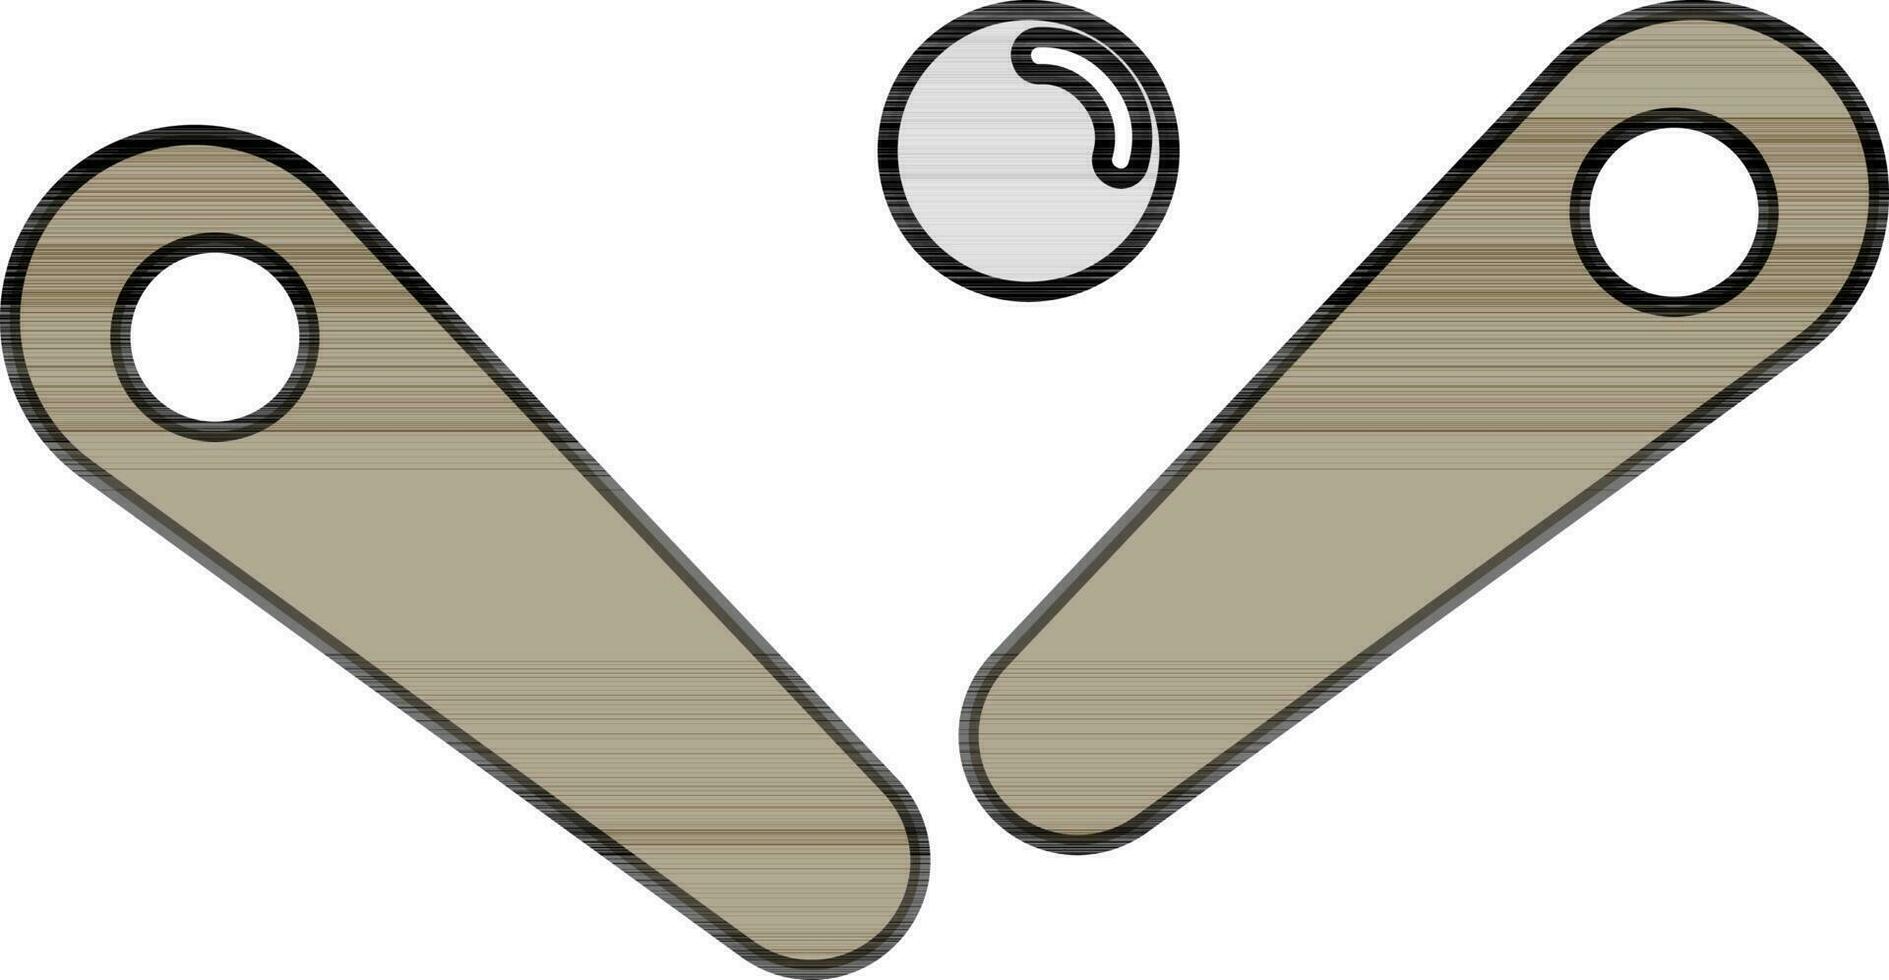 marrón y gris pinball vector